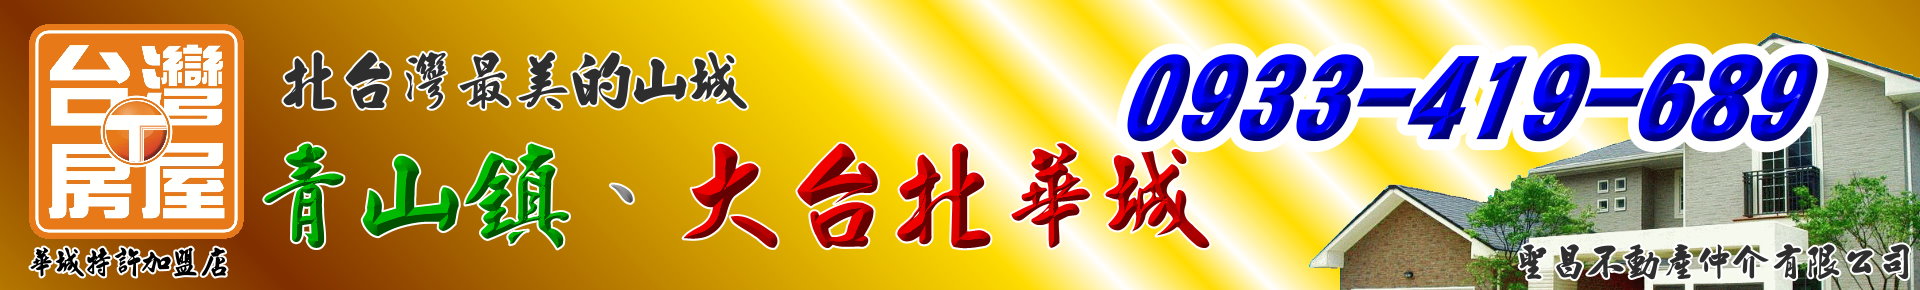 房屋搜尋結果-【白健芬】一次委託~終身信賴(大台北華城/青山鎮) logo